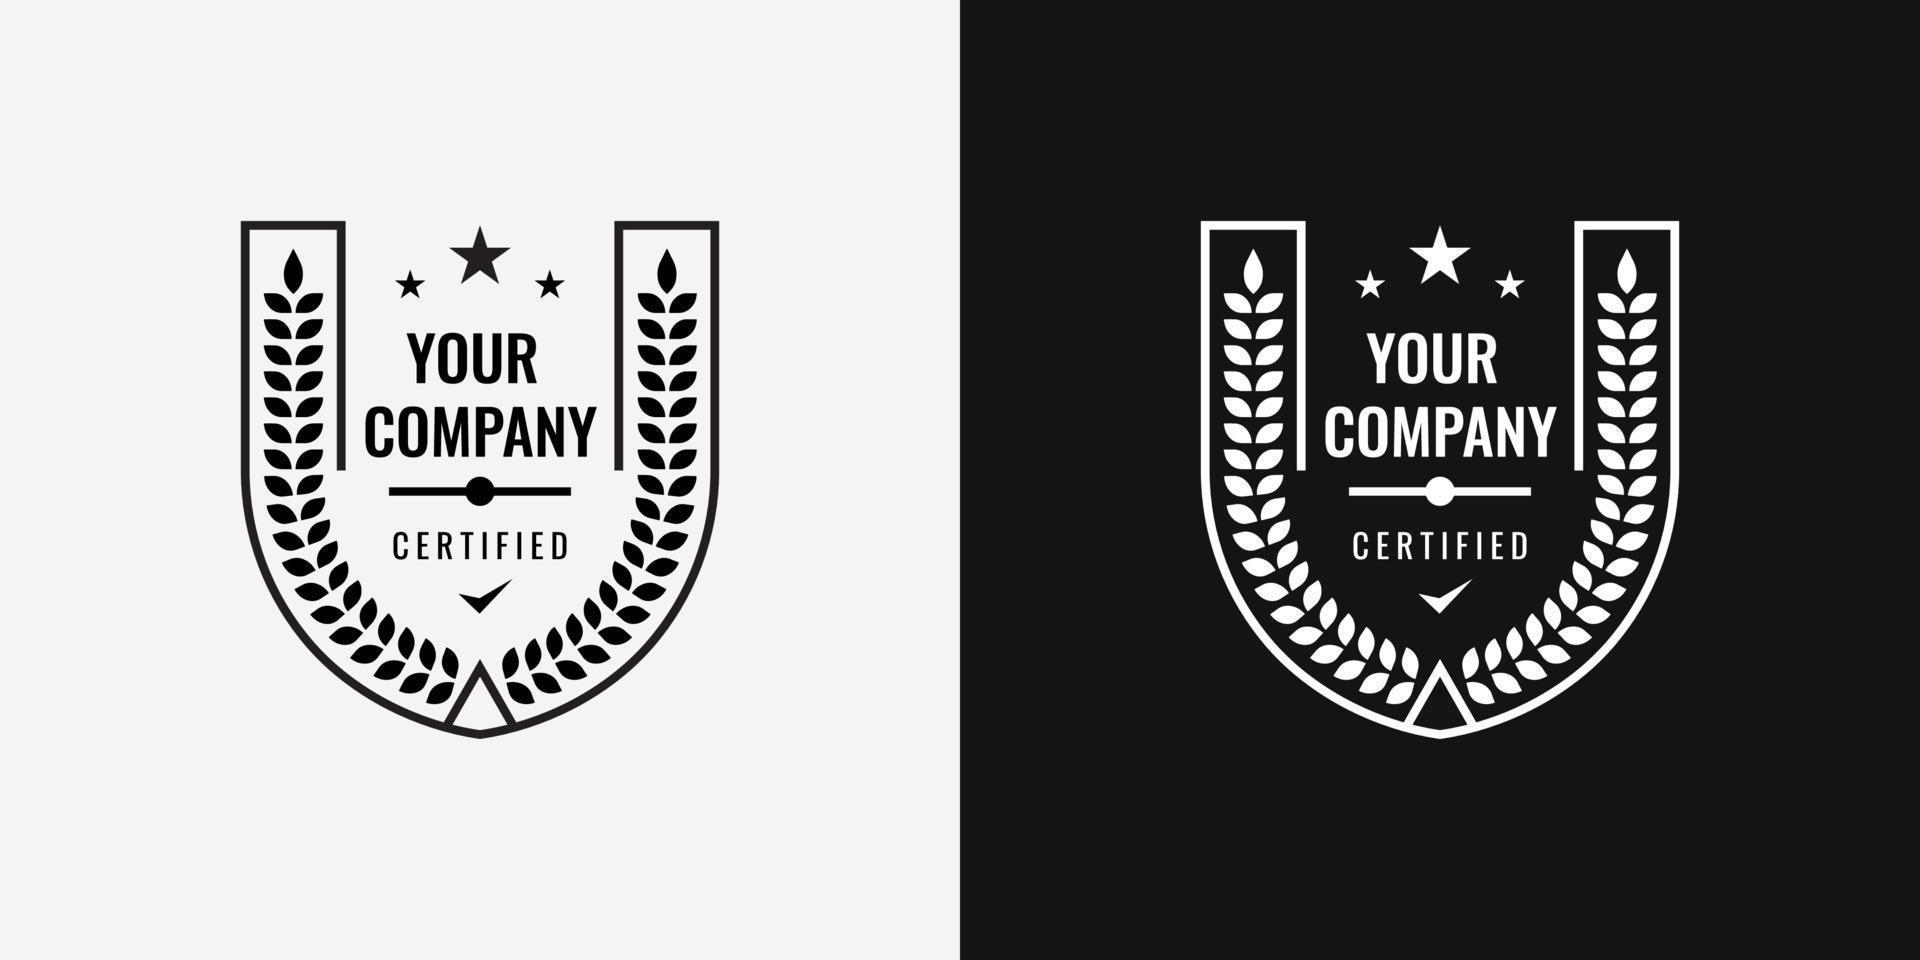 Insignia de logotipo para empresa certificada en blanco y negro. diseño adecuado para certificación, aniversario, etiqueta de empaque, logotipo de alimentos y bebidas, etc. plantilla de ilustración vectorial. vector